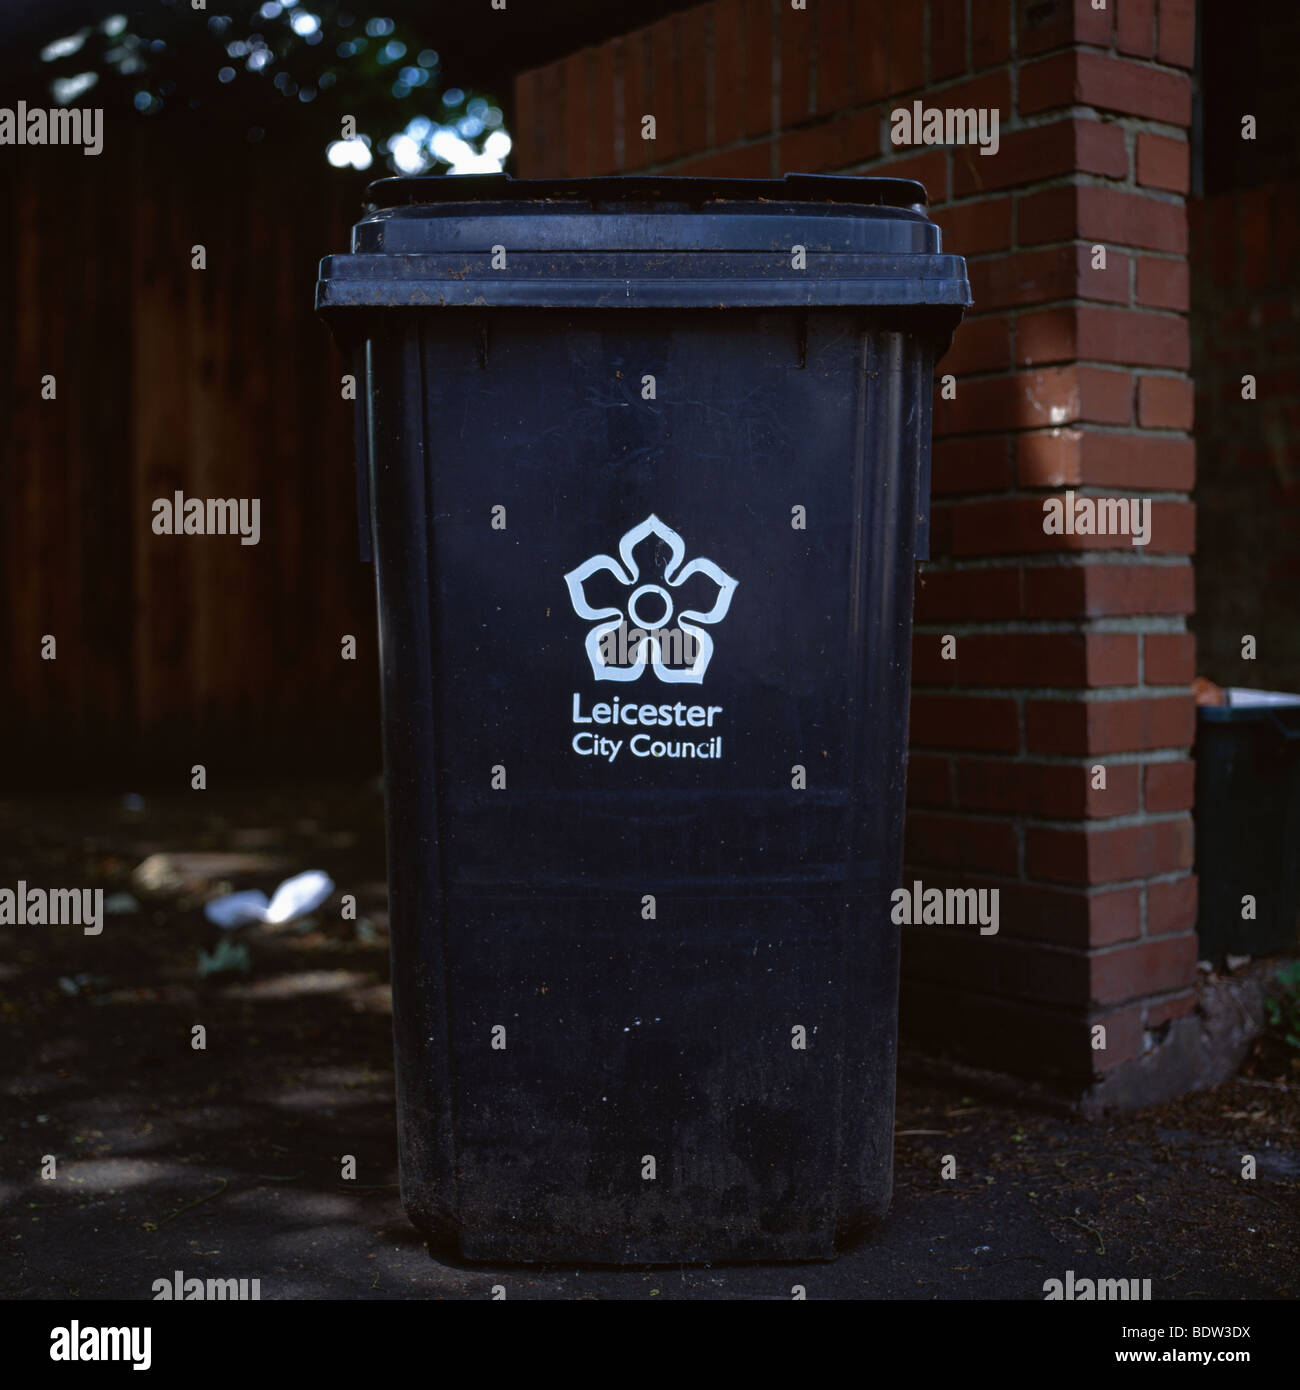 Leicester City Council wheelie bin. Stock Photo